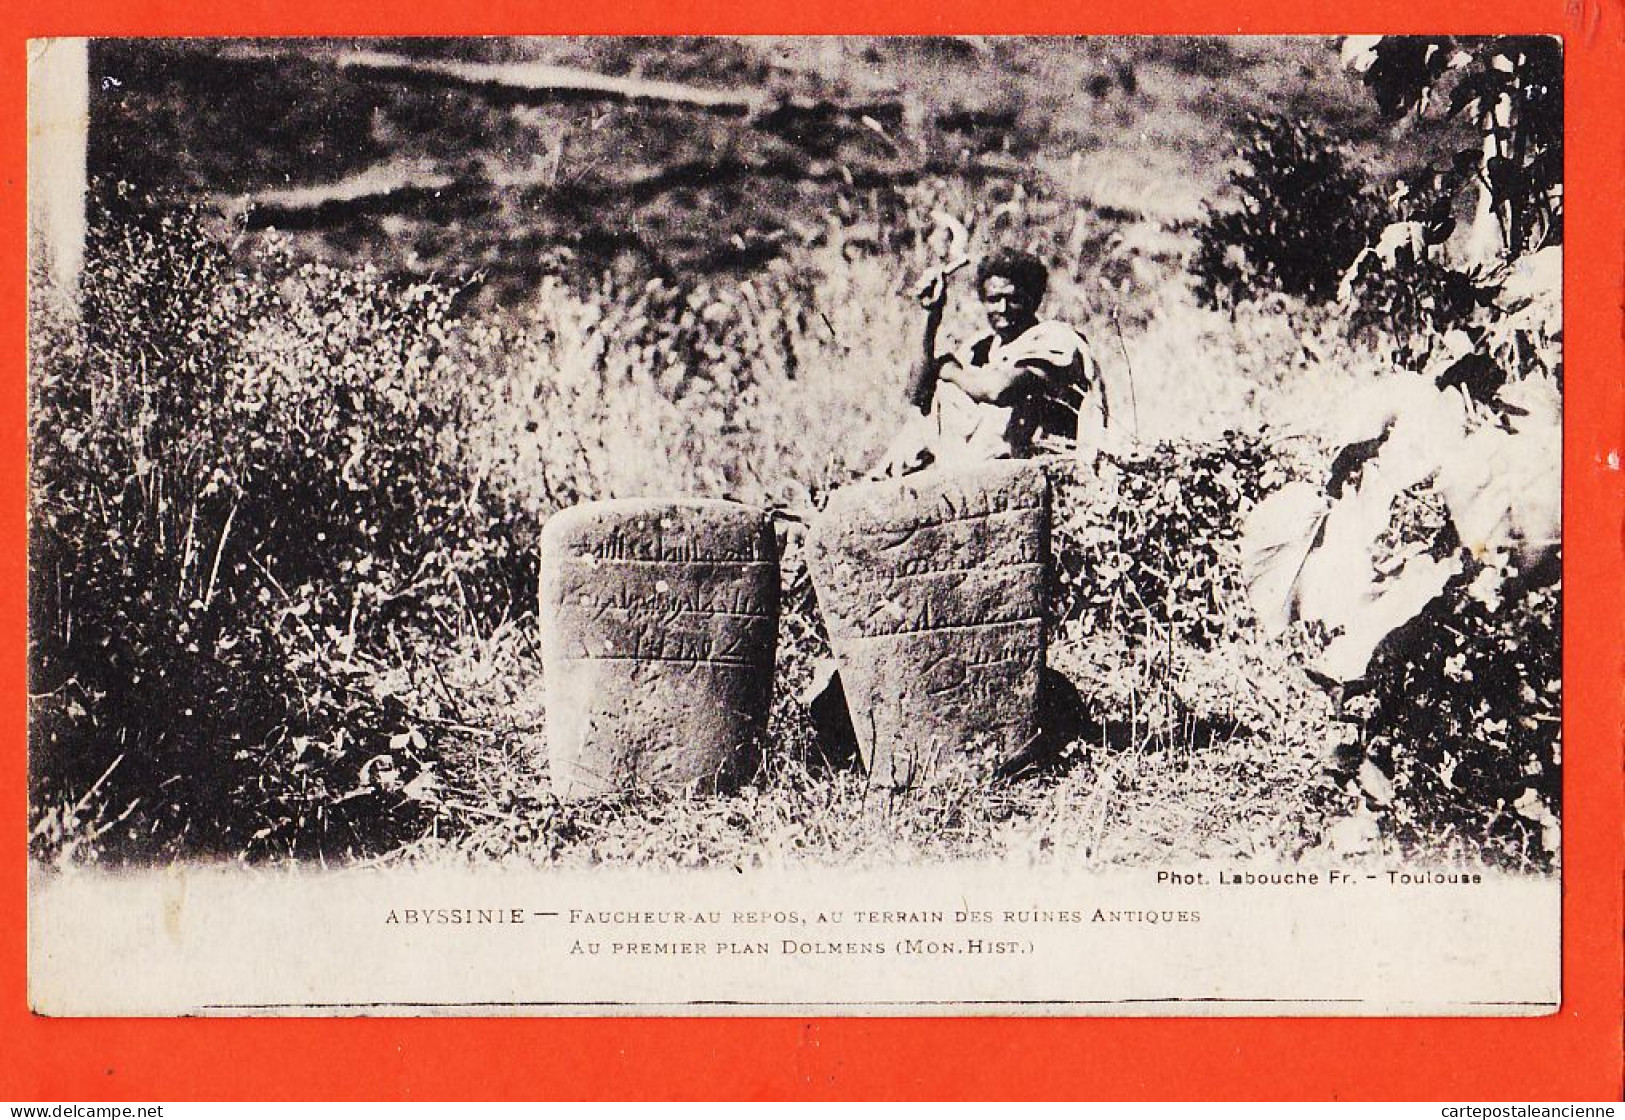 08002 ● ● Photo LABOUCHE  (!) ABYSSINIE Ethiopie Faucheur Au Repos Terrain Des Ruines Antiques Au Premier Plan Dolmens  - Äthiopien